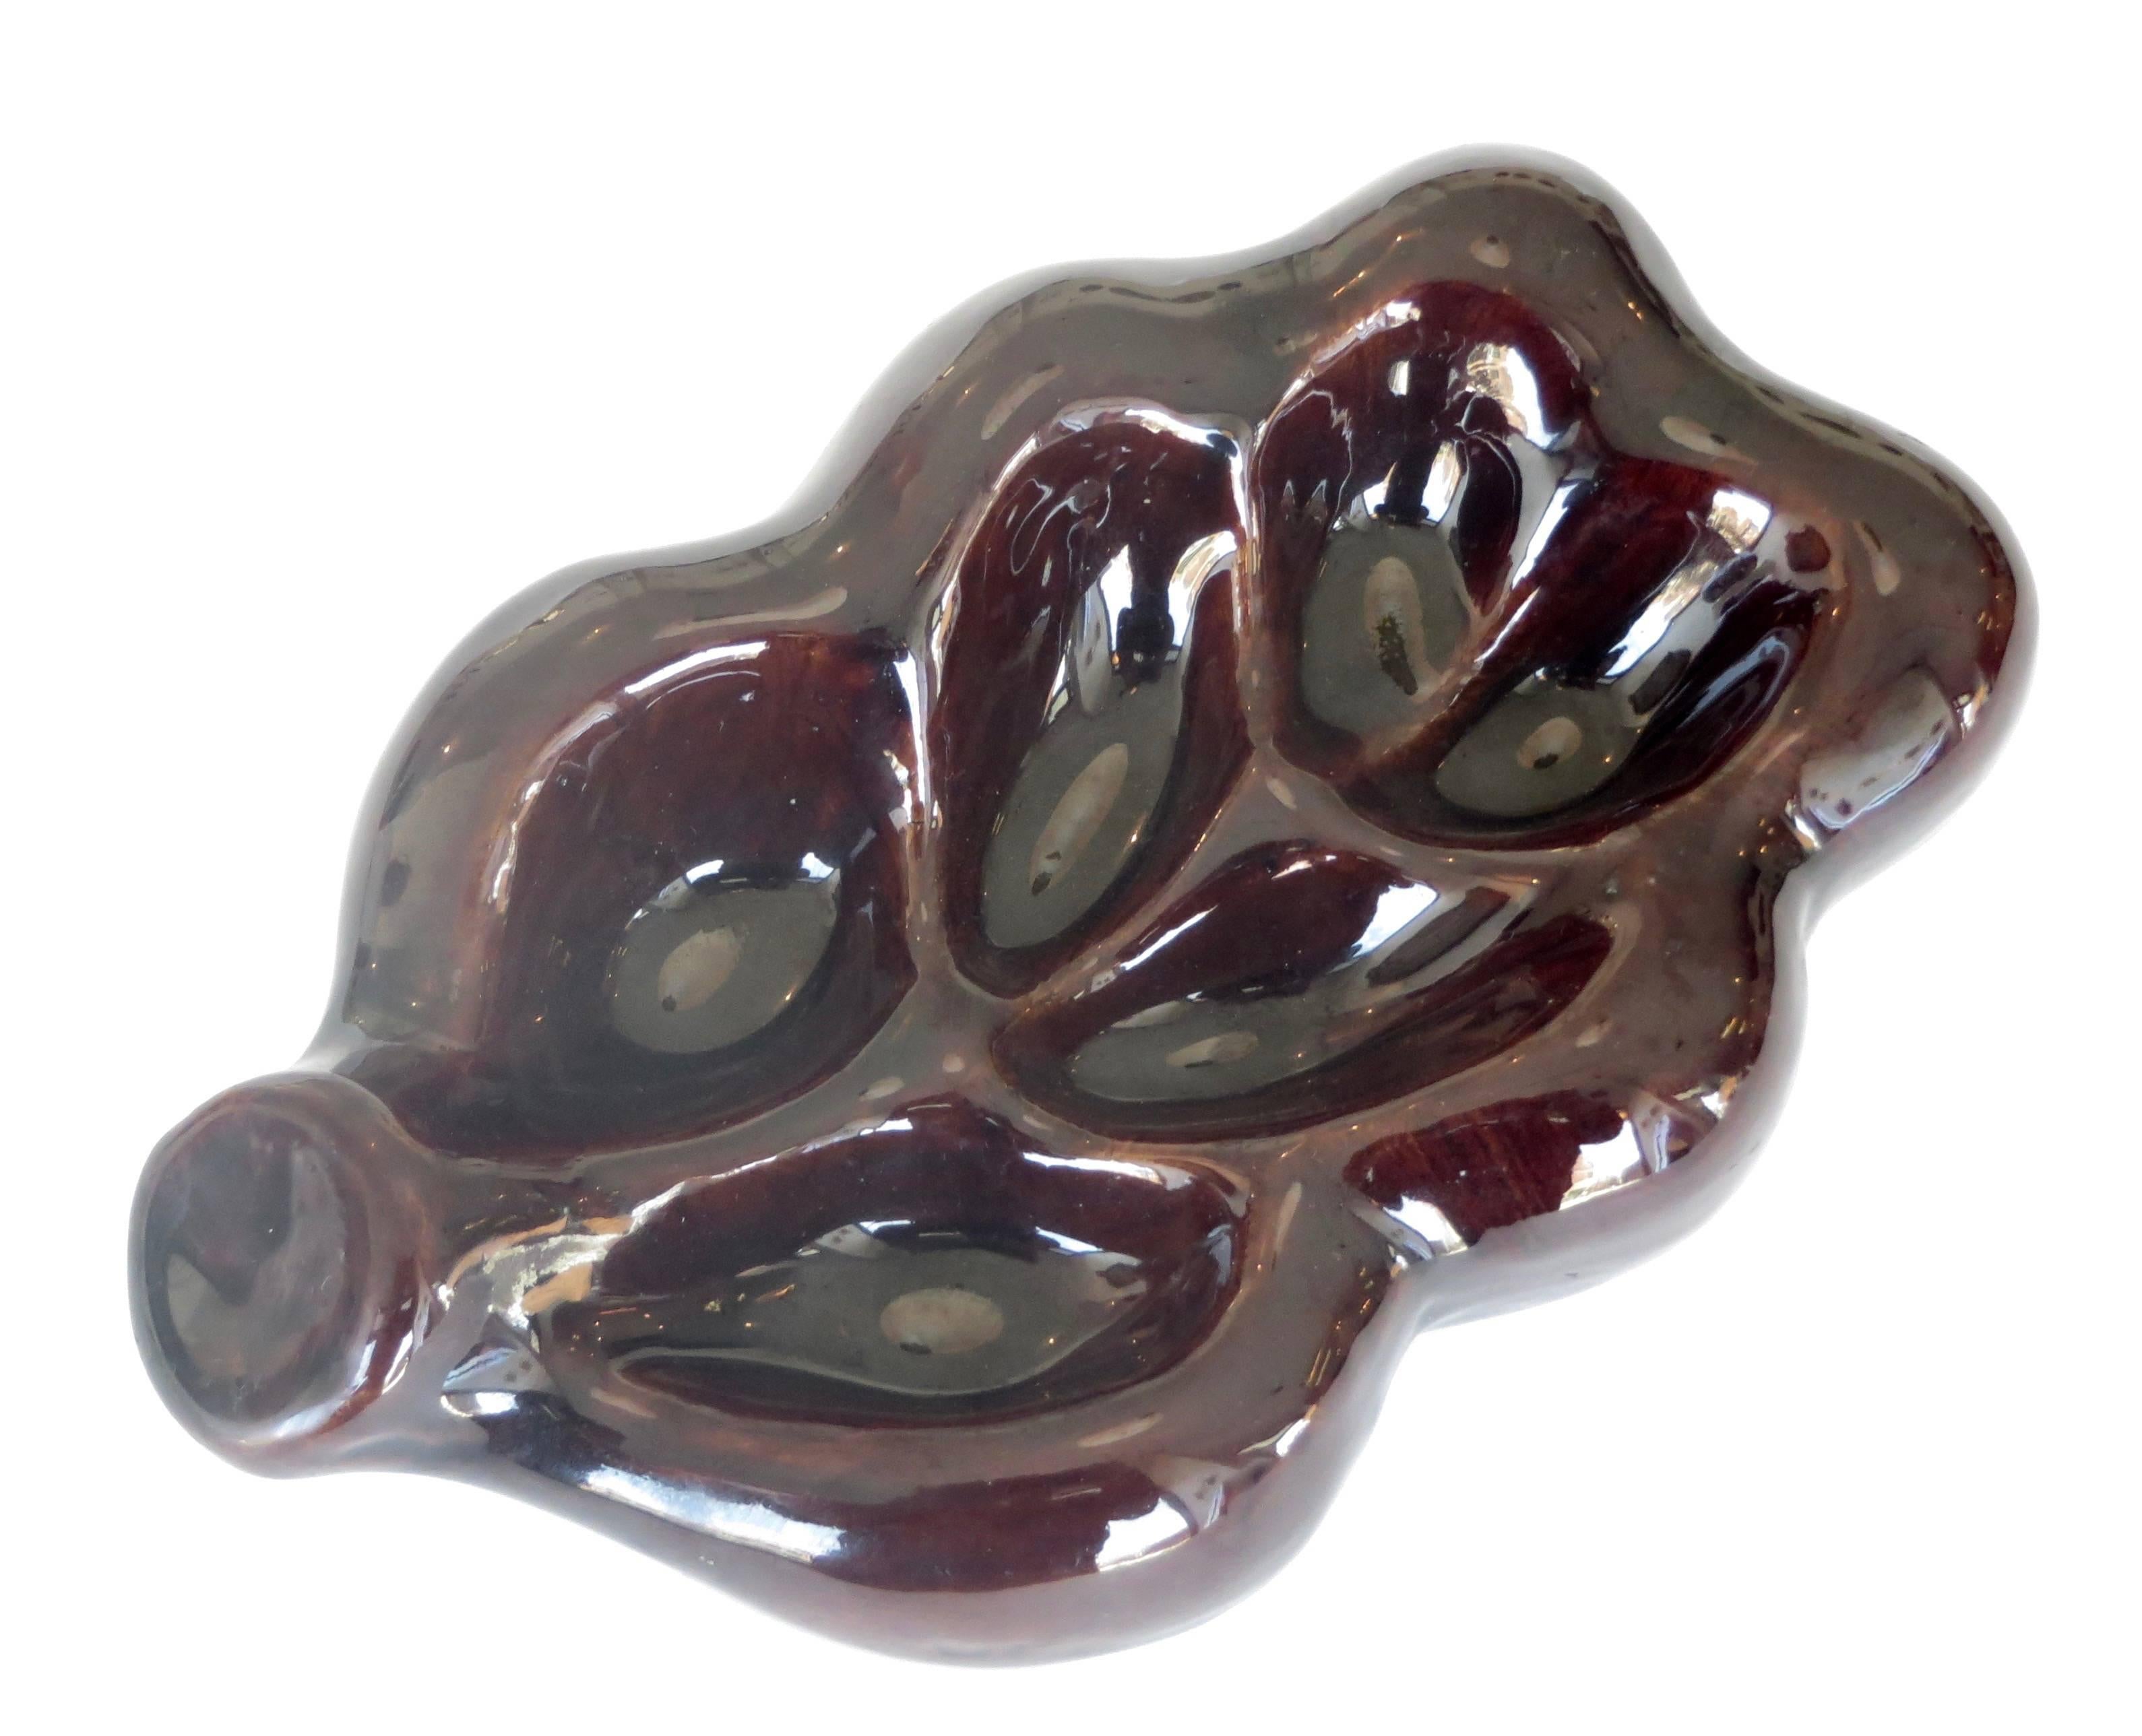 Georges Jouve French Ceramic Artist Feuille Dish in Dark Brown Aubergine 1